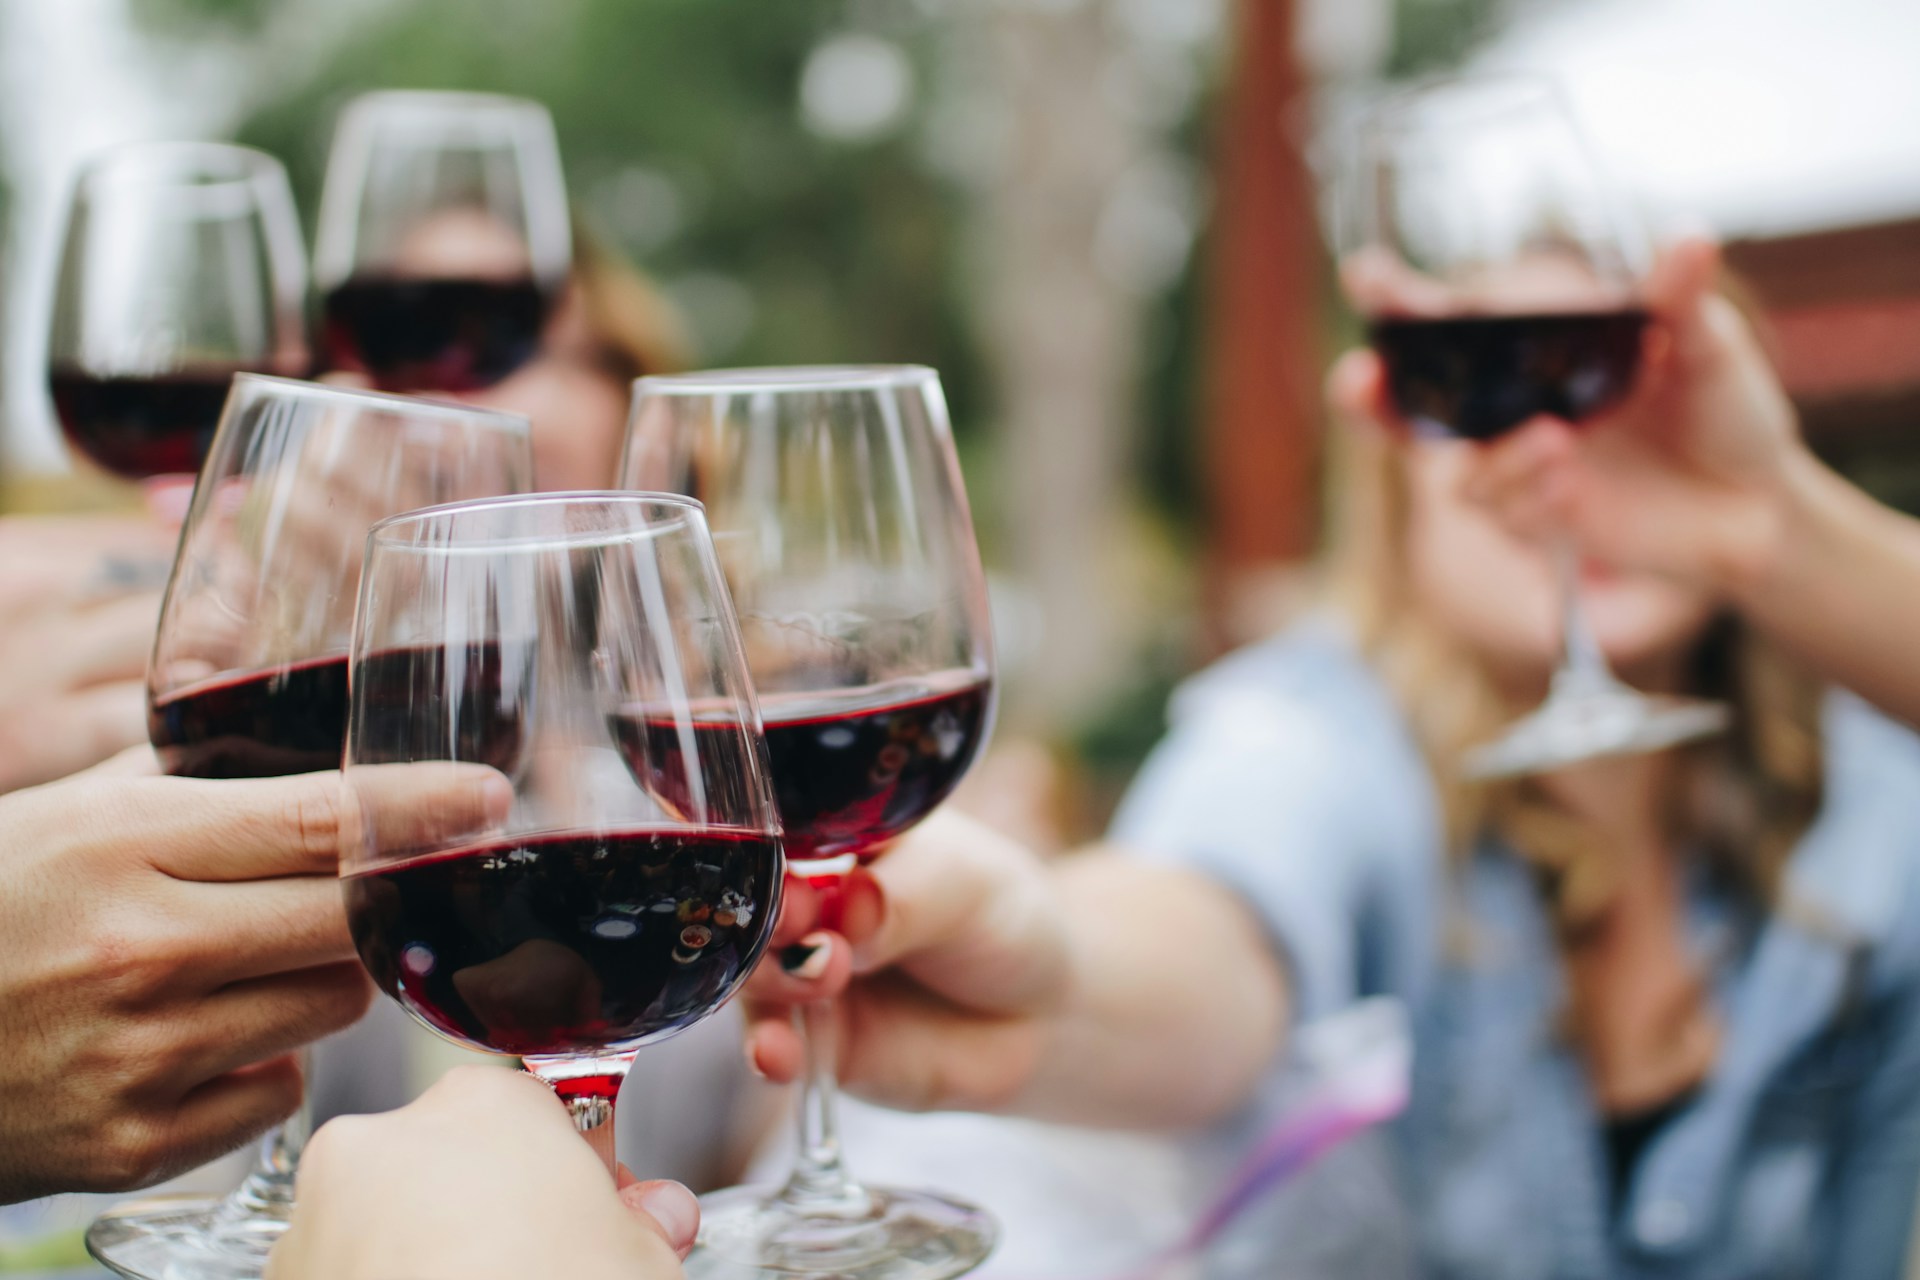 Boire 6 verres de vin par semaine : les risques pour la santé.